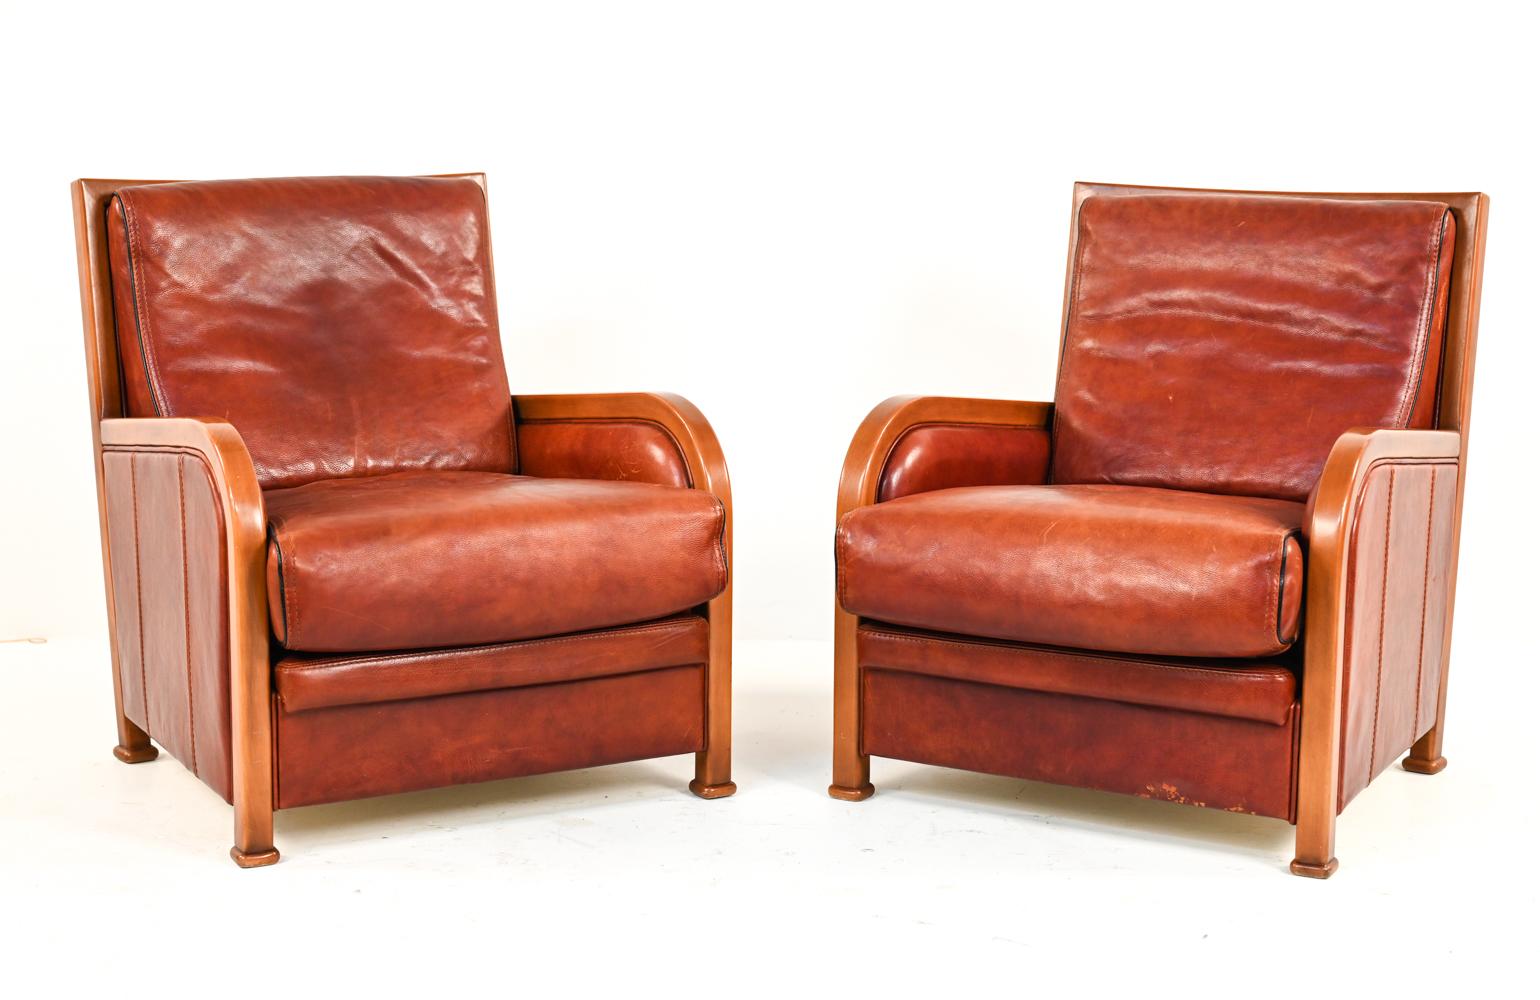 Ces rares fauteuils club danois du milieu du siècle dernier, de marque Anton Dam, ont un grand style Art Déco. Ces chaises combinent les lignes rondes et droites de manière attrayante. Avec leurs cadres en bois et leur revêtement en cuir rouge, ces